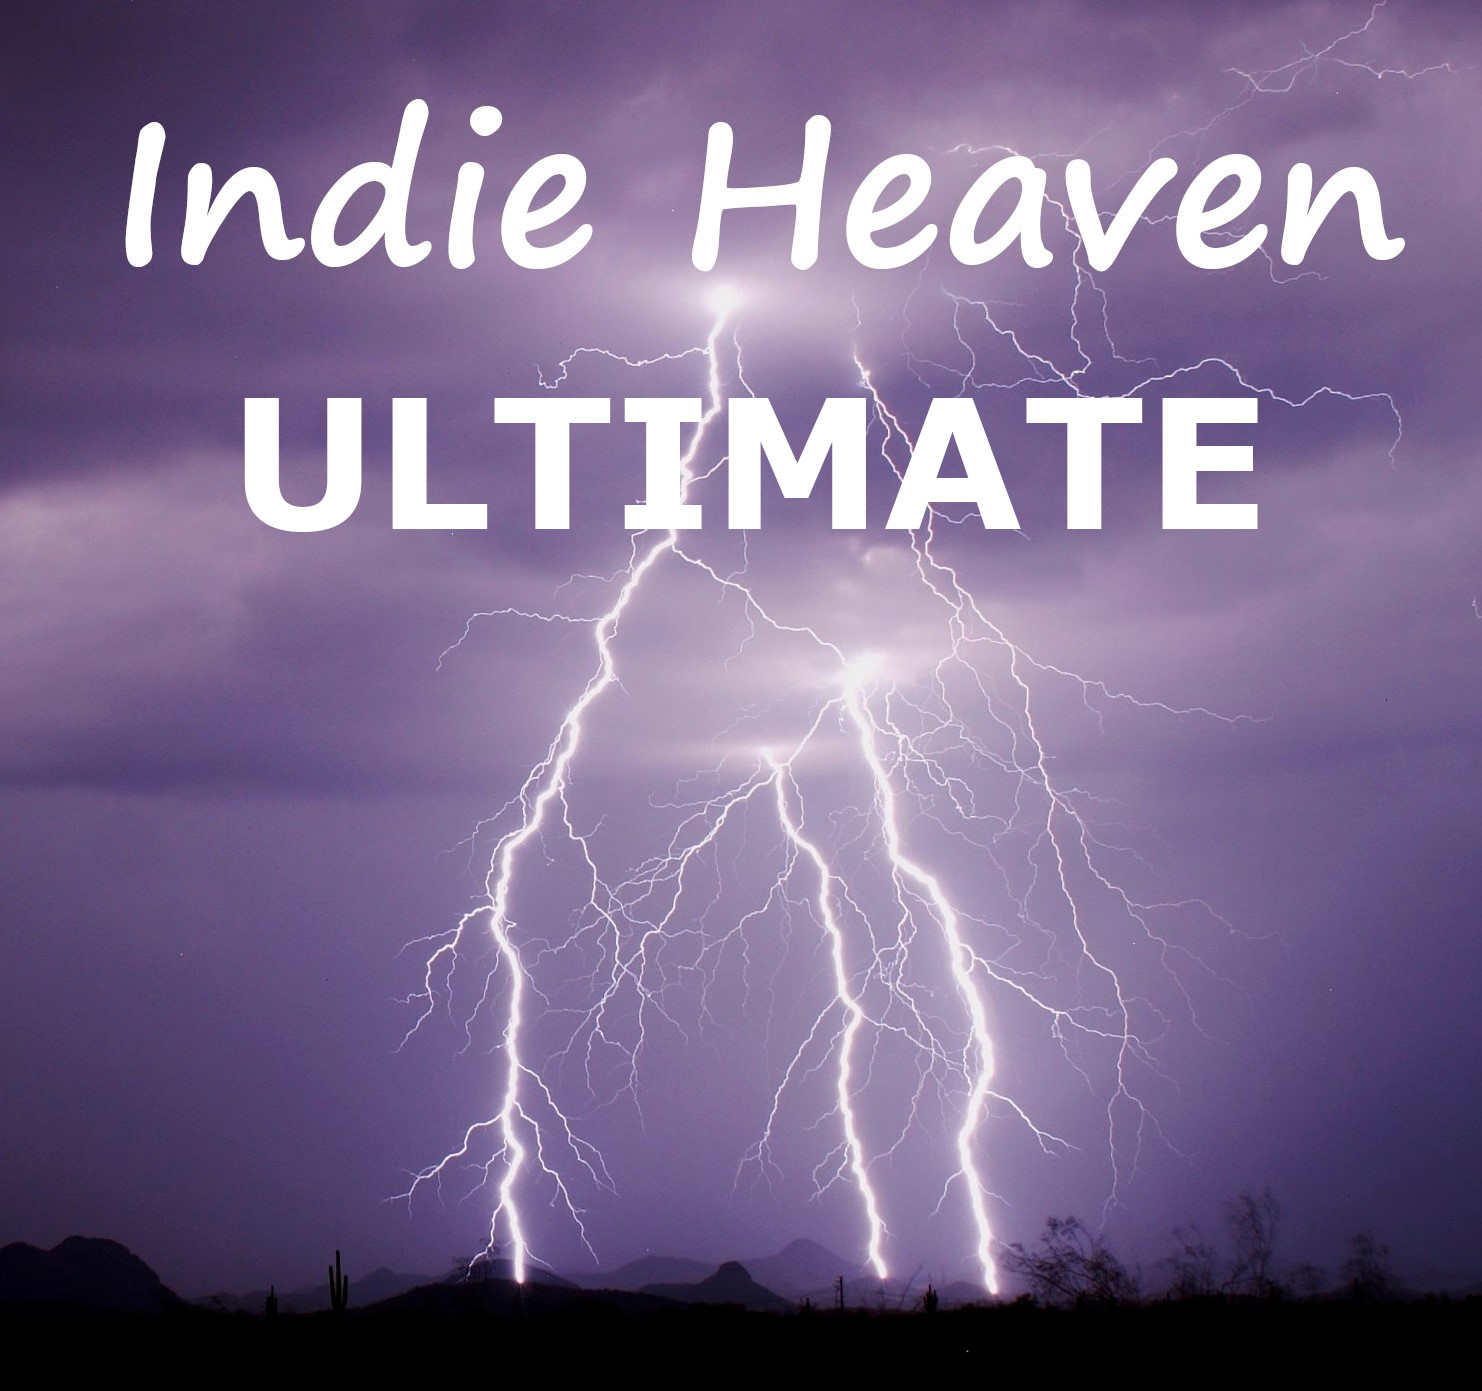 Indie Heaven Ultimate